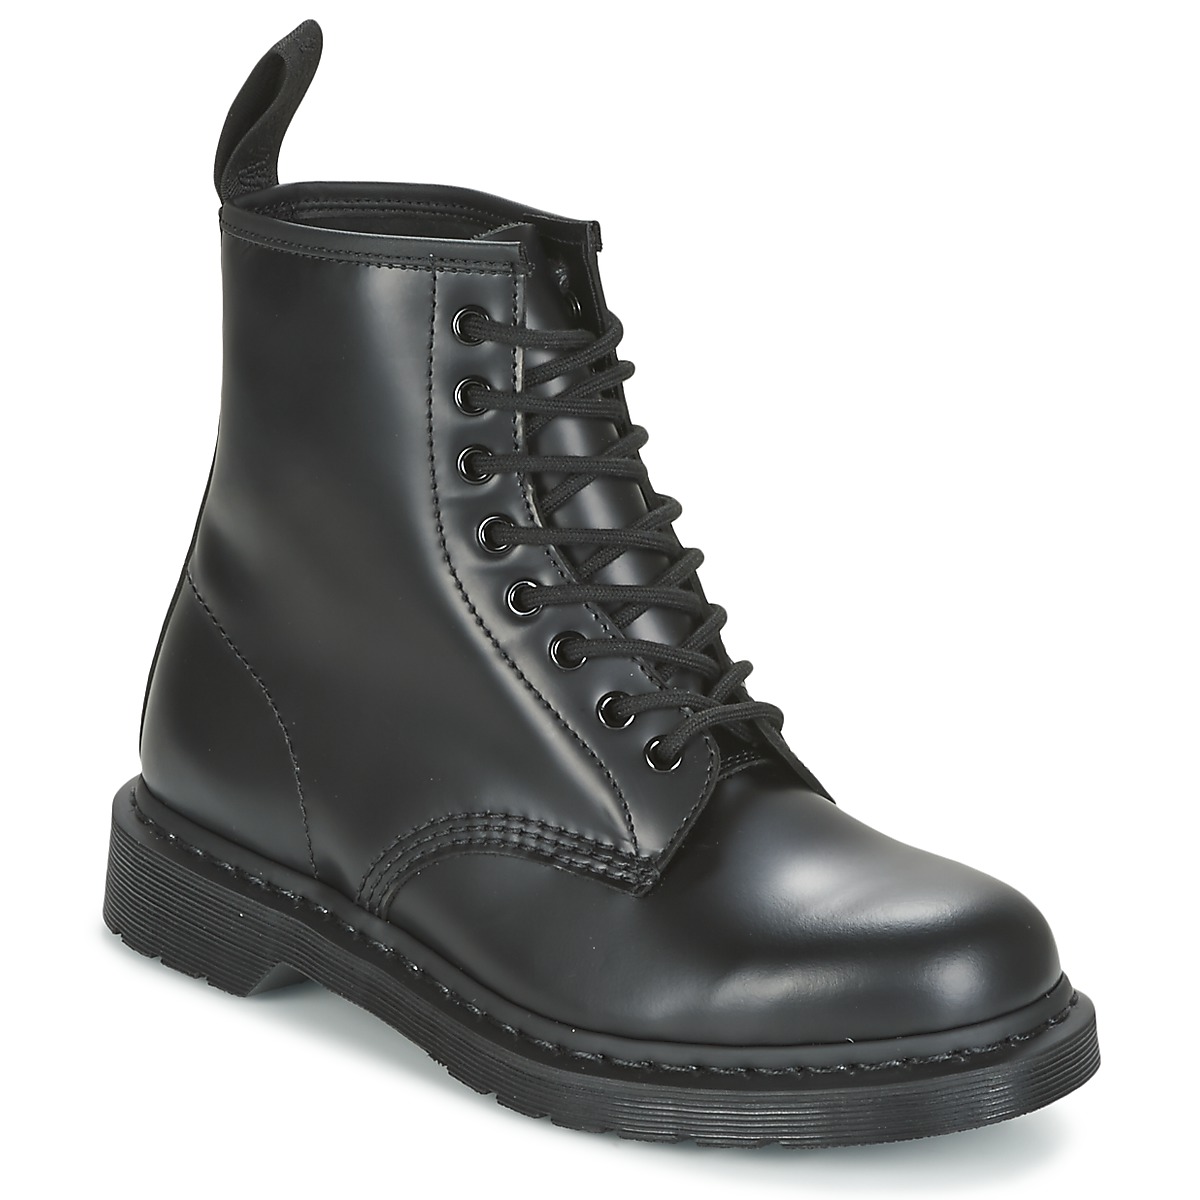 Chaussures Martens babylon slip-on sandals Black 1460 MONO Noir Smooth